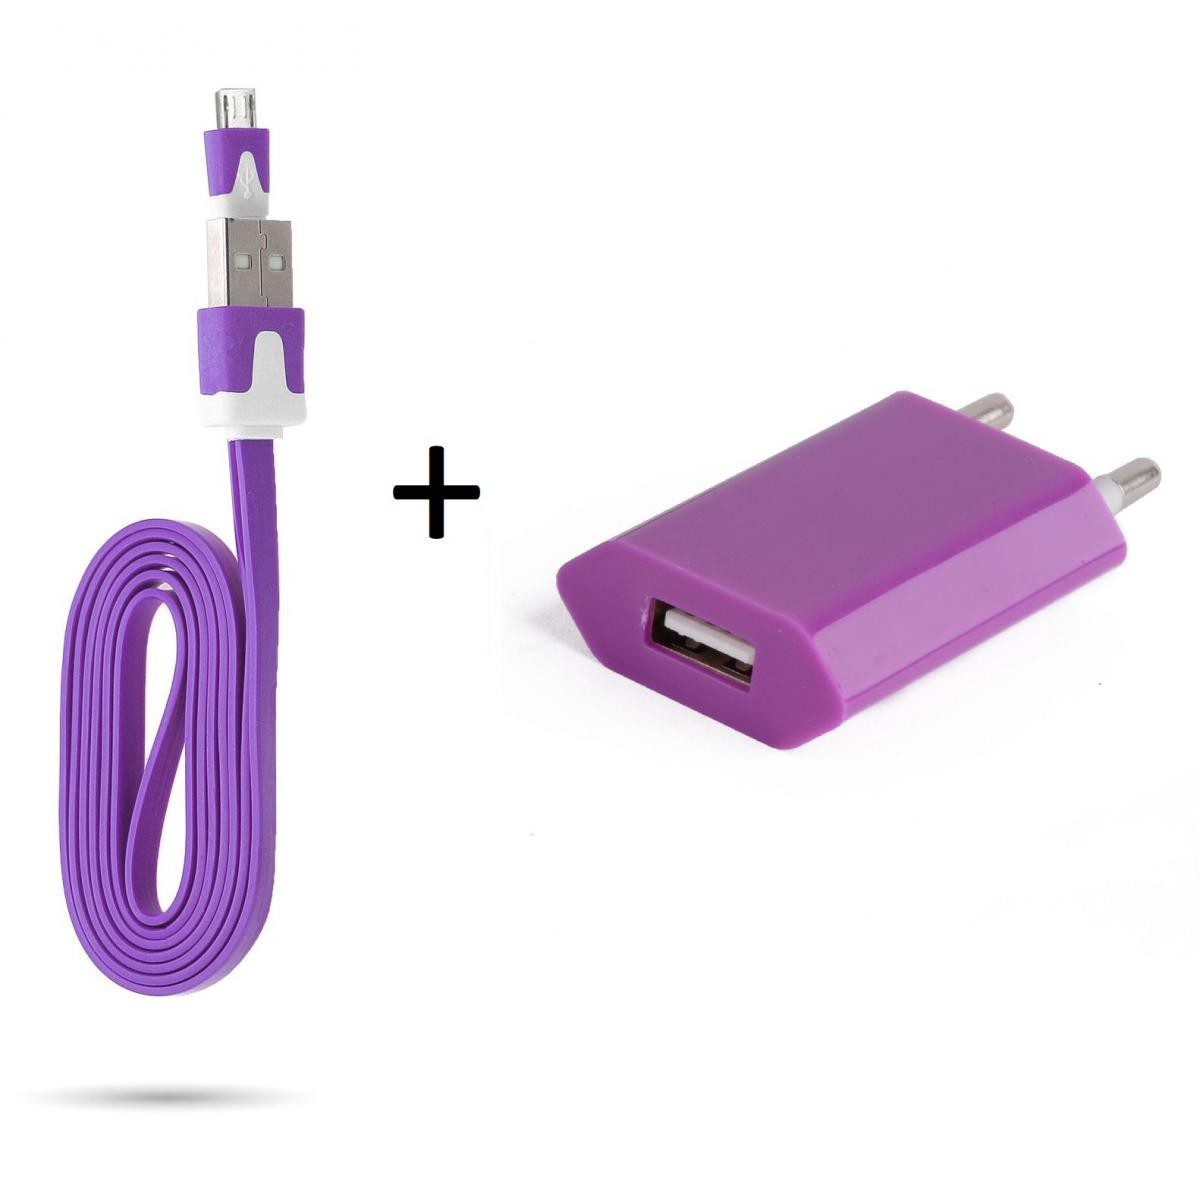 Shot - Cable Noodle 1m Chargeur + Prise Secteur pour HUAWEI Y6s Smartphone Micro USB Murale Pack Android (VIOLET) - Chargeur secteur téléphone